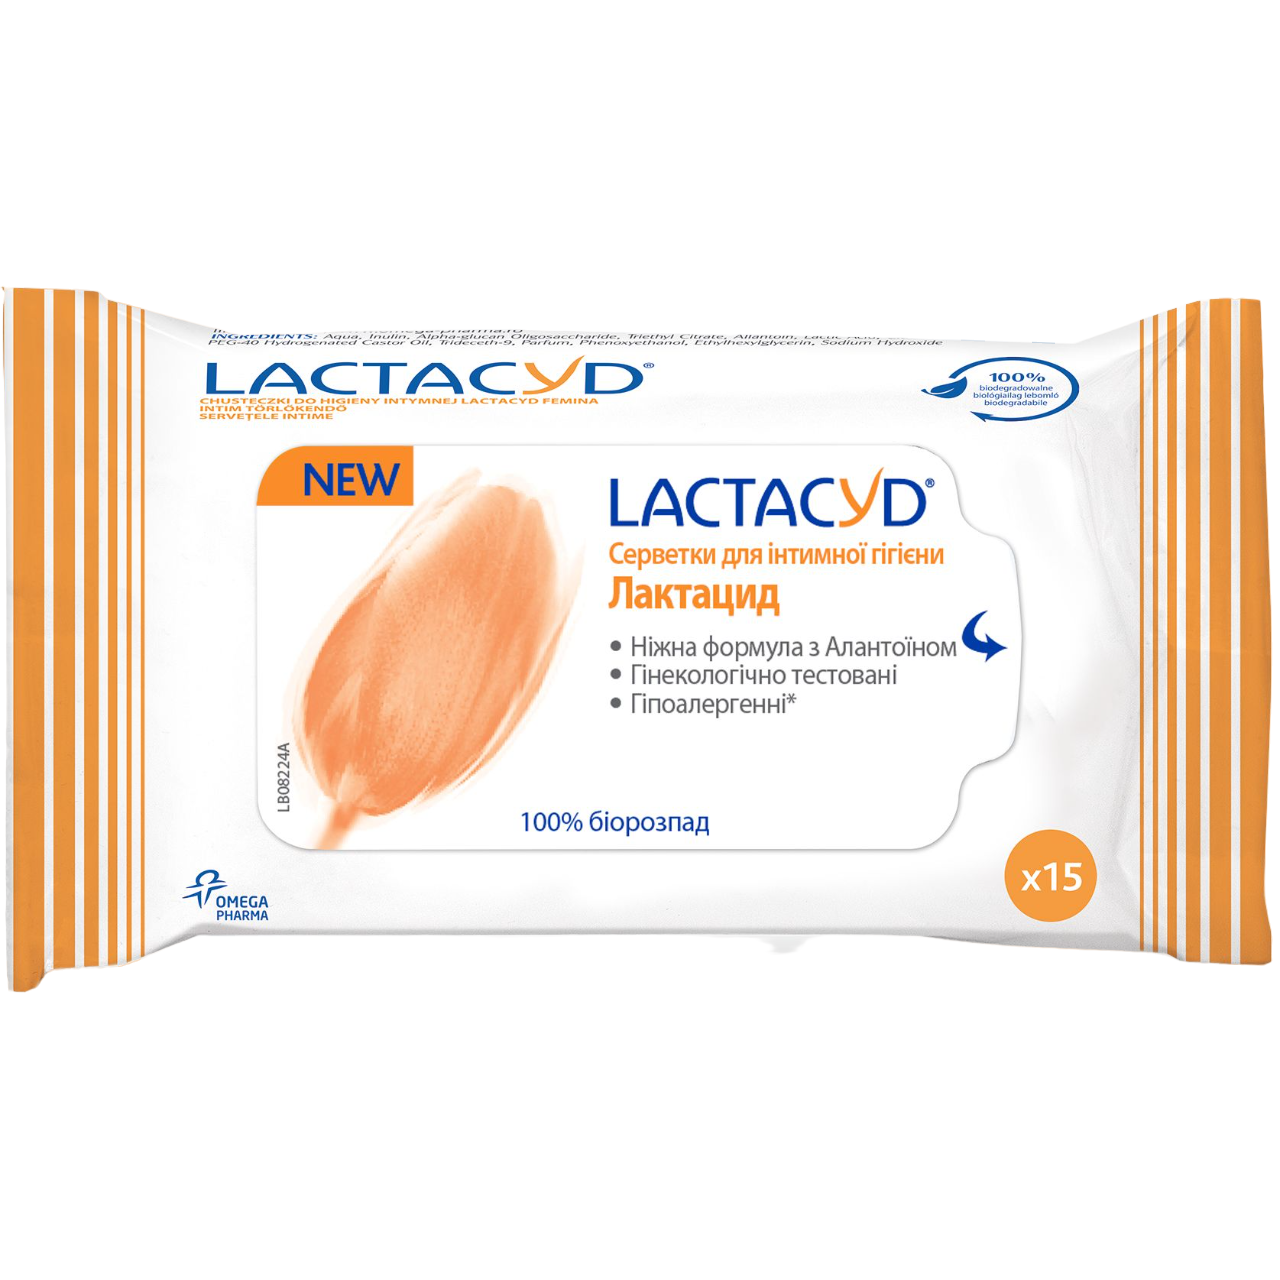 Салфетки для интимной гигиены Lactacyd, 15 шт. - фото 1